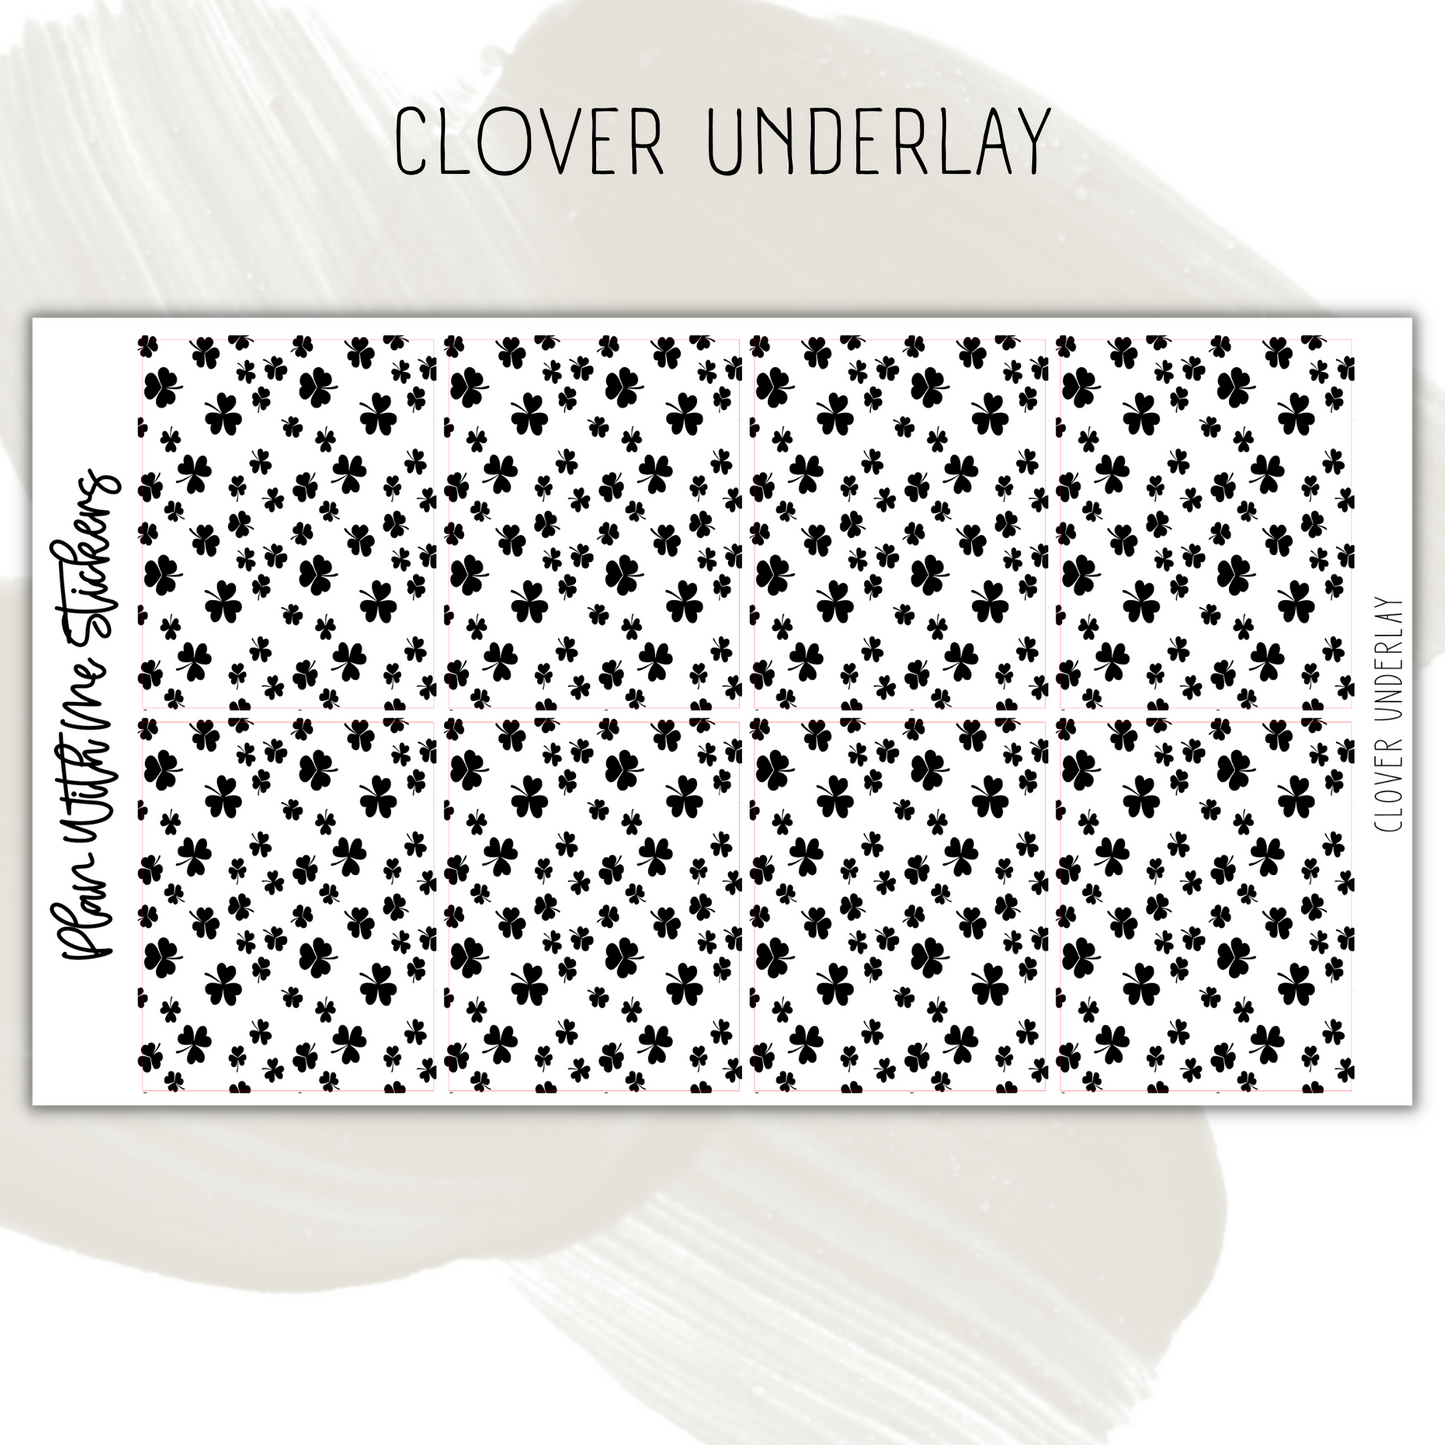 Clover Underlay